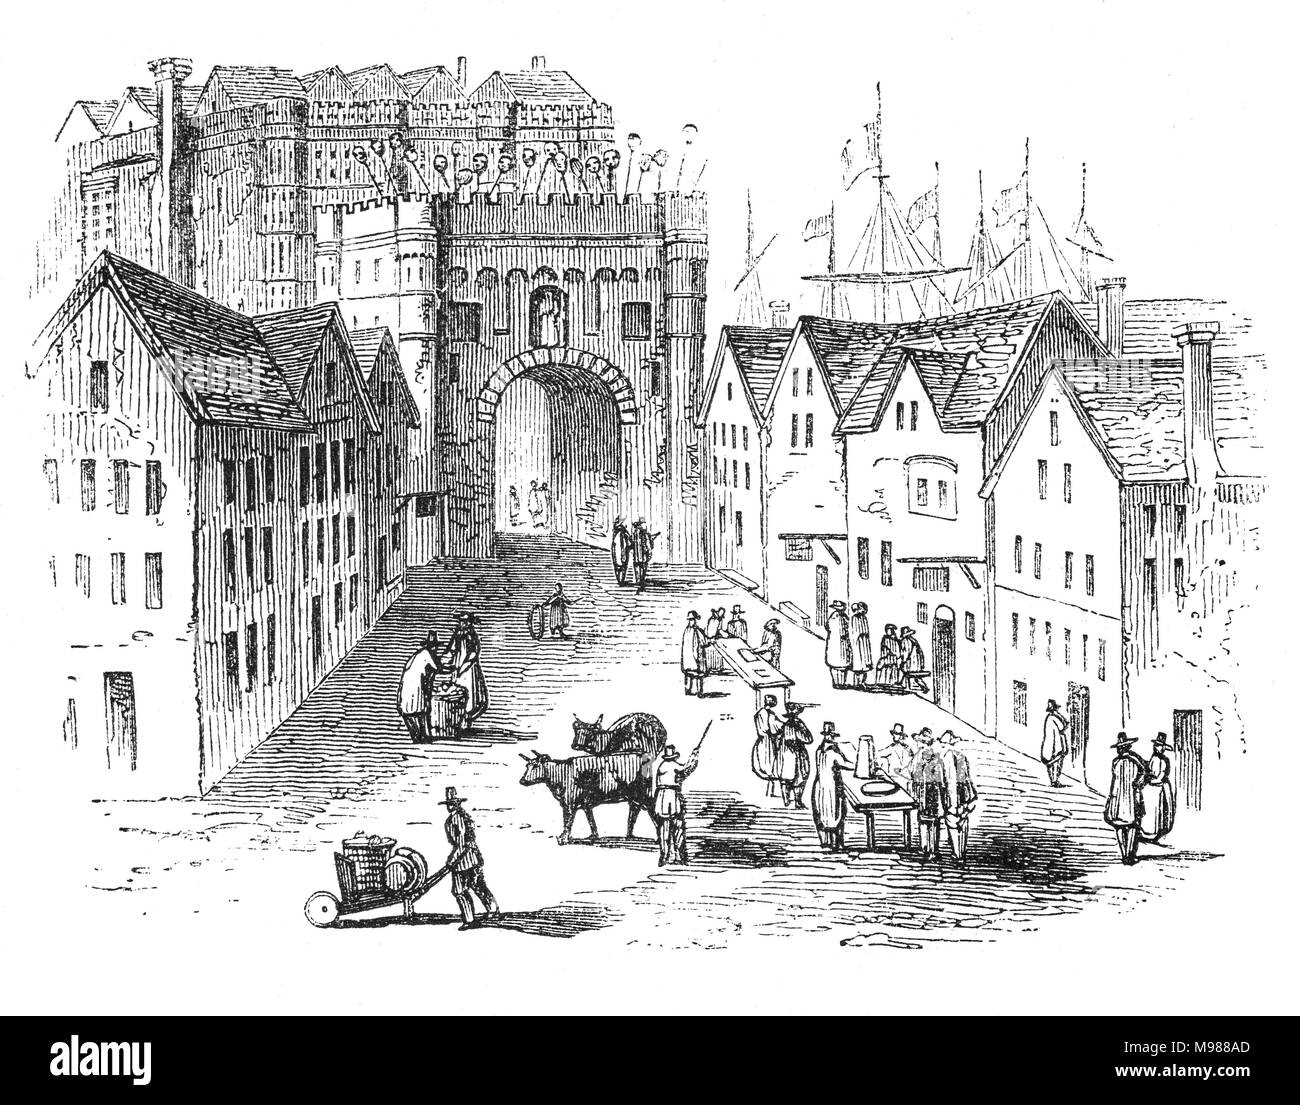 L'ingresso a corona del vecchio ponte di Londra (1209-1831) oltre il Tamigi lungo il lato di Southwark. Il re Enrico II ha commissionato un nuovo ponte di pietra al posto del vecchio, con una cappella al suo centro dedicato a Becket come martire. I lavori di costruzione iniziarono nel 1176 e fu finita nel 1209 durante il regno di Re Giovanni; ci sono voluti 33 anni per completare. Città di Londra, Inghilterra Foto Stock